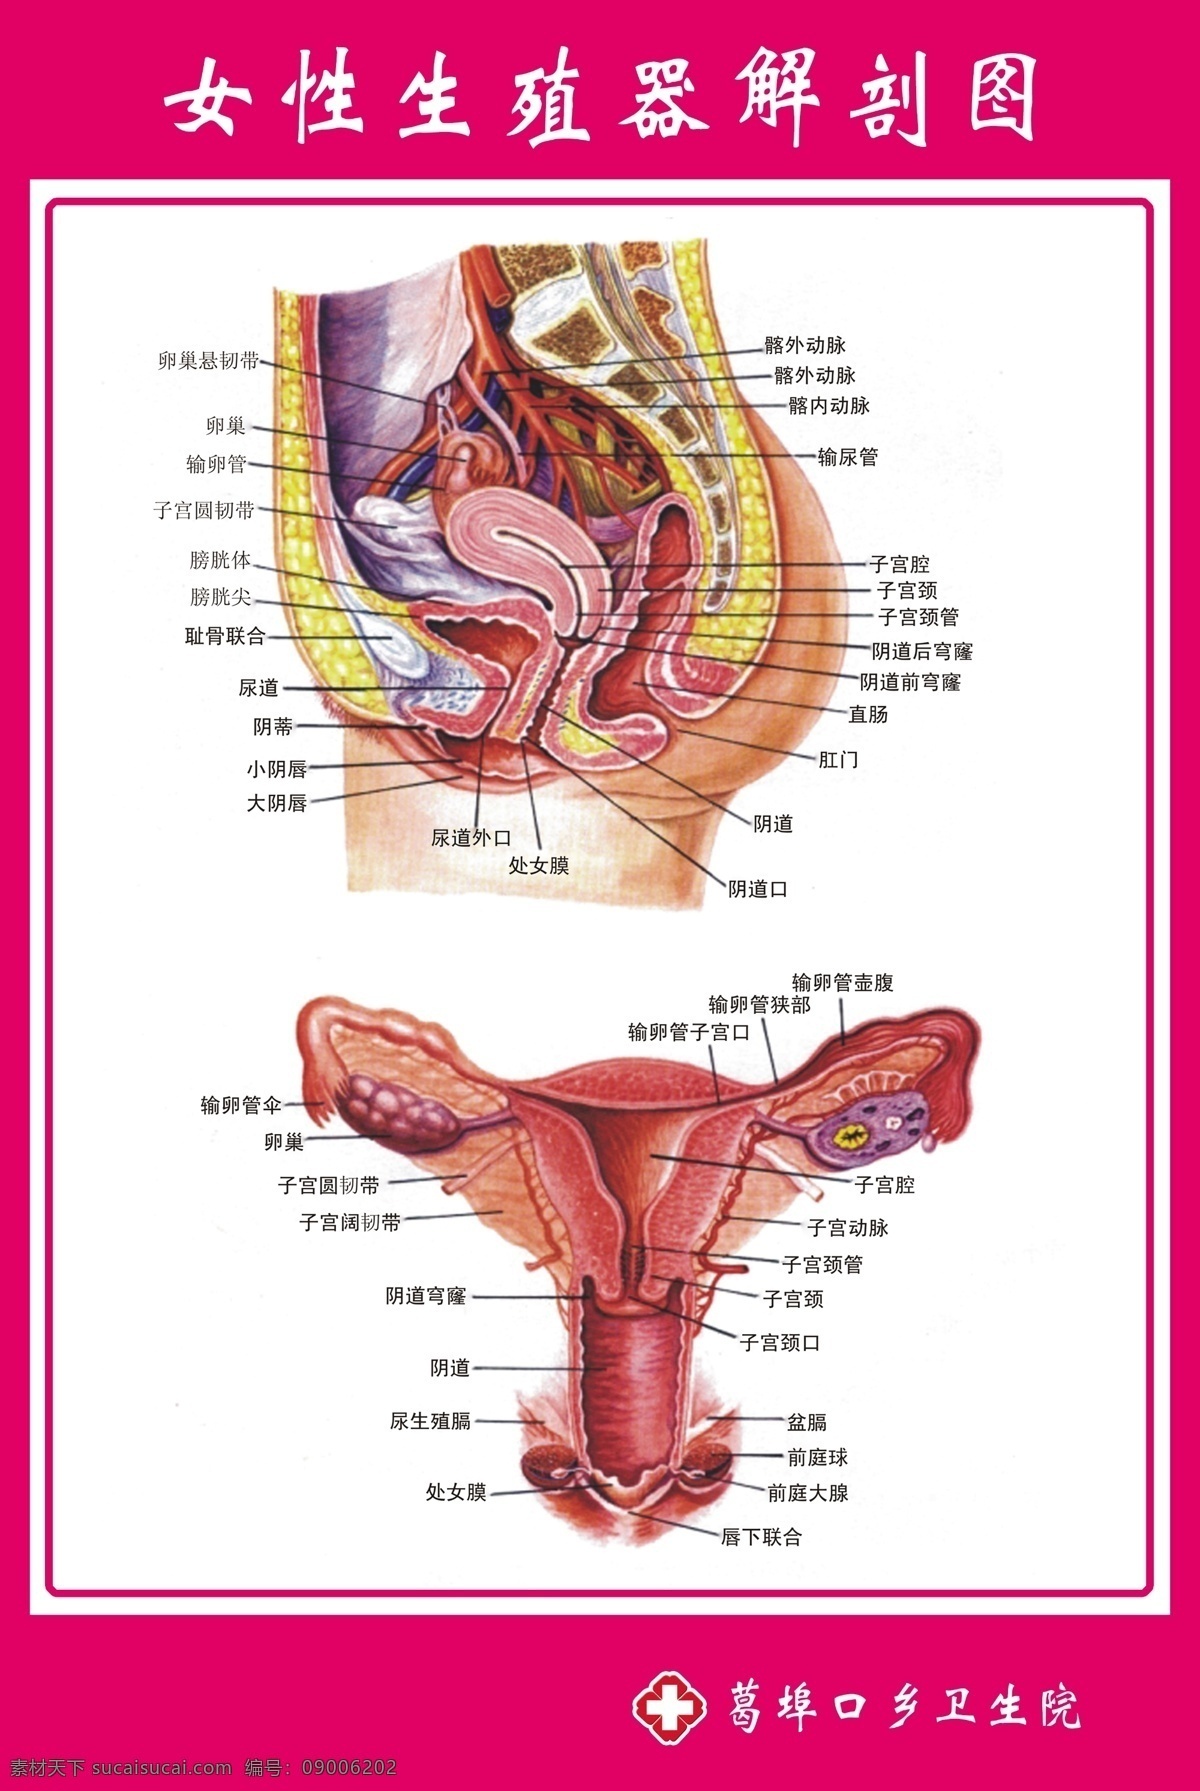 女性 生殖器 解剖 图解 分层 不 精细 图 女性解剖图 生殖器解剖图 示意图 解剖图 医院示意图 医院解剖图 门诊示意图 源文件